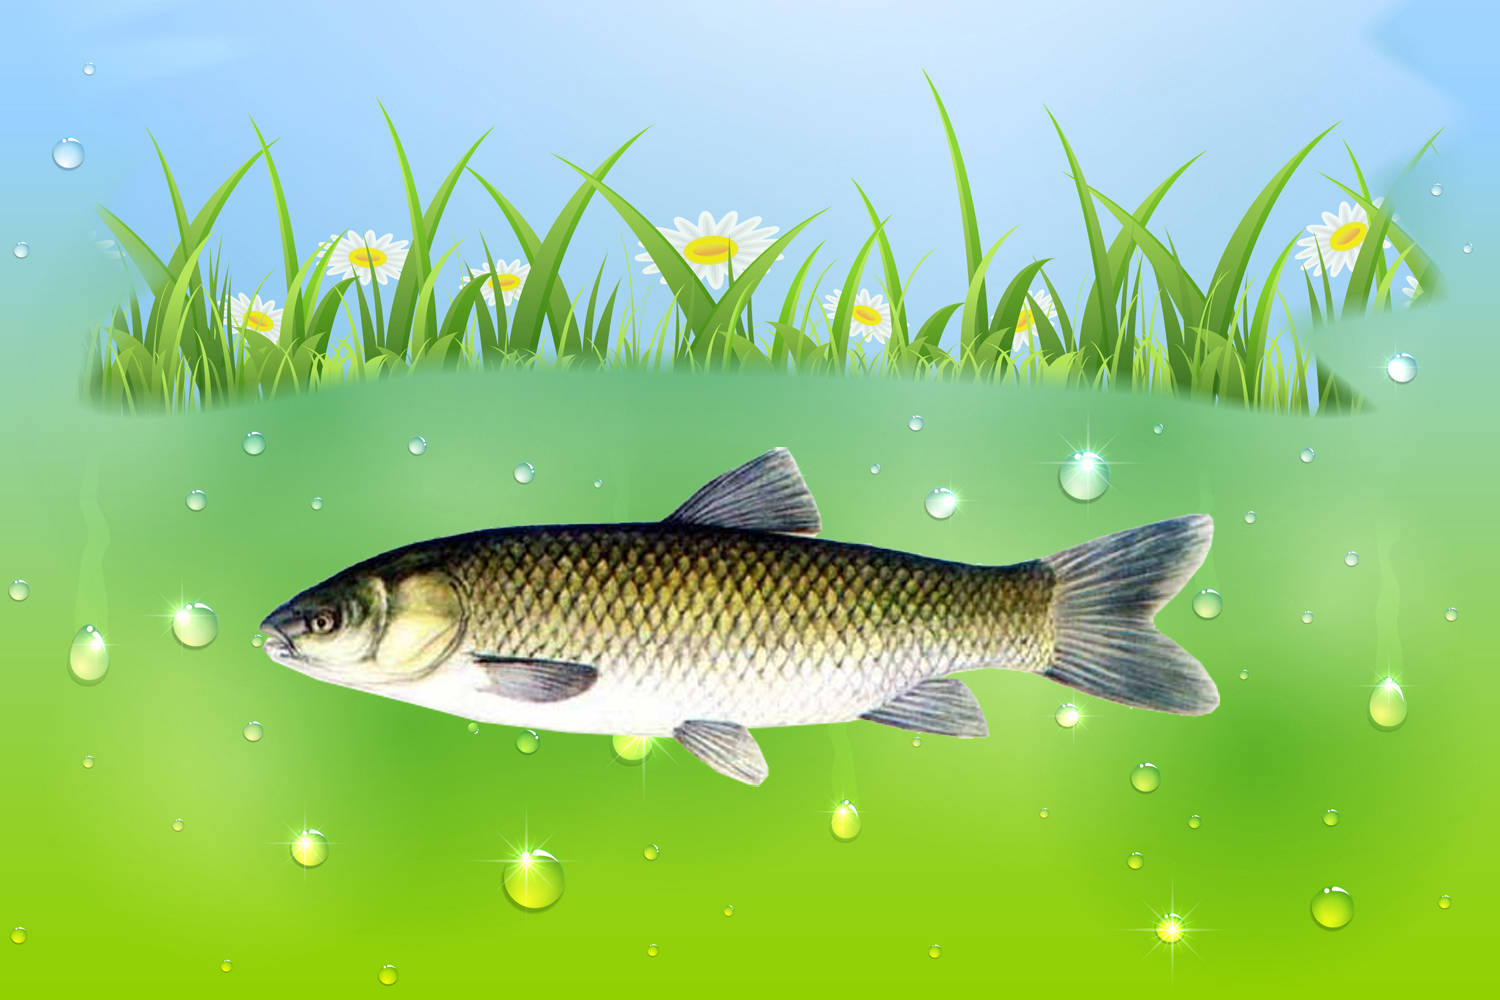 原创草鱼最爱吃什么如何才能钓到大草鱼草鱼的摄食习性和垂钓方法